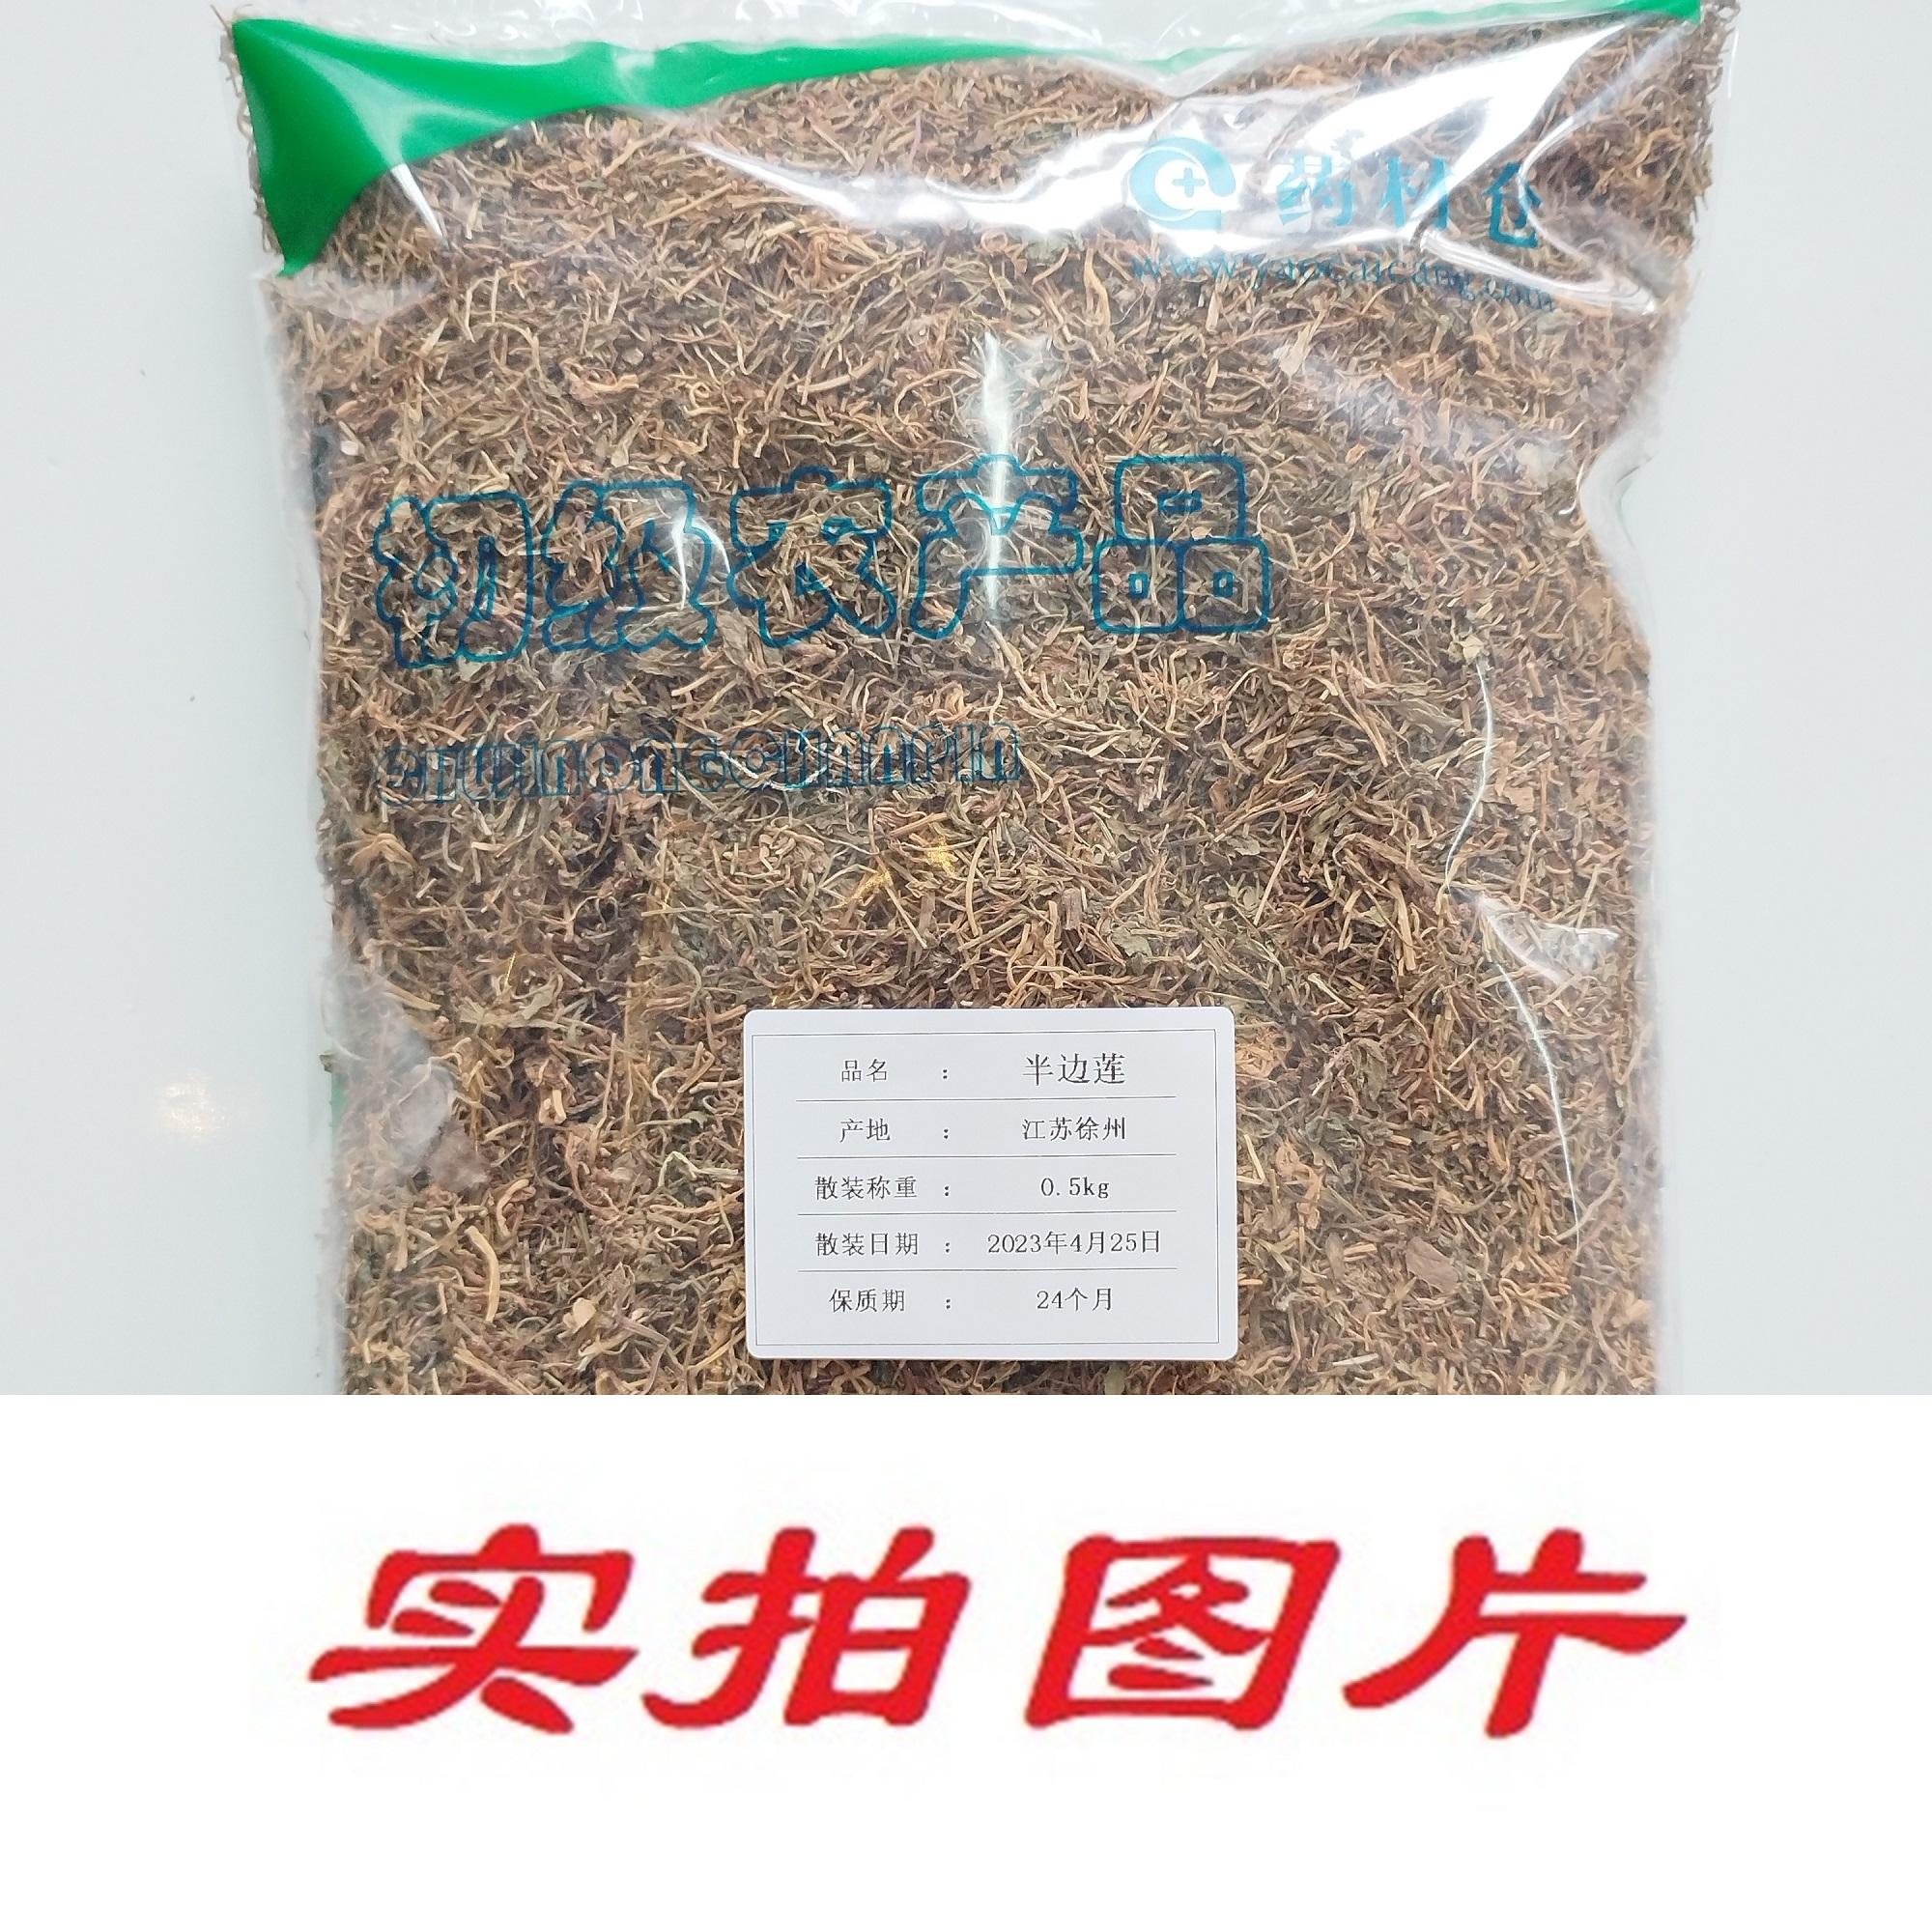 【】半边莲0.5kg-农副产品